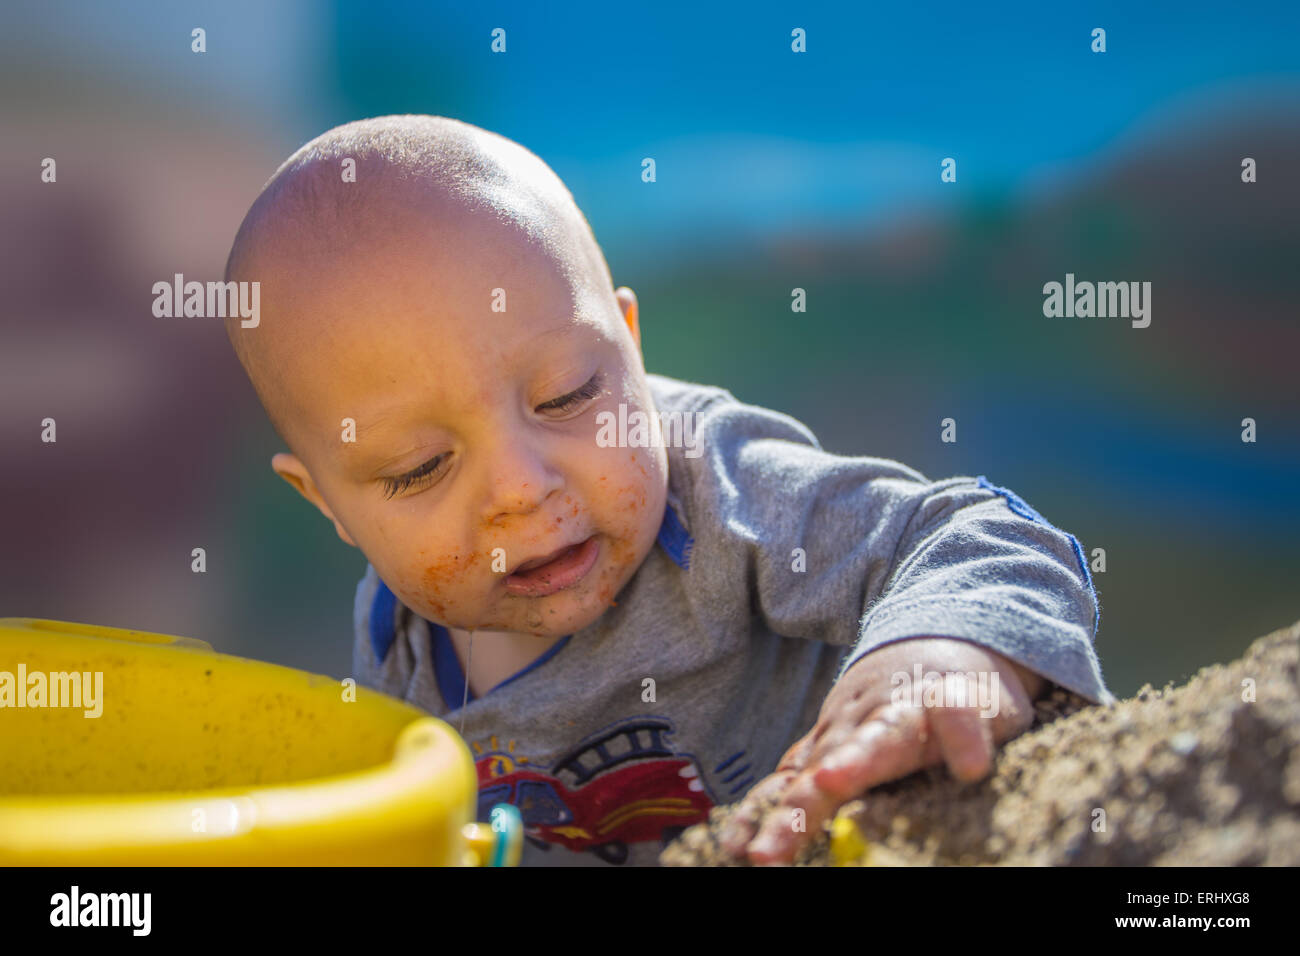 Baby Boy zum ersten Mal im Sandkasten spielen. Stockfoto